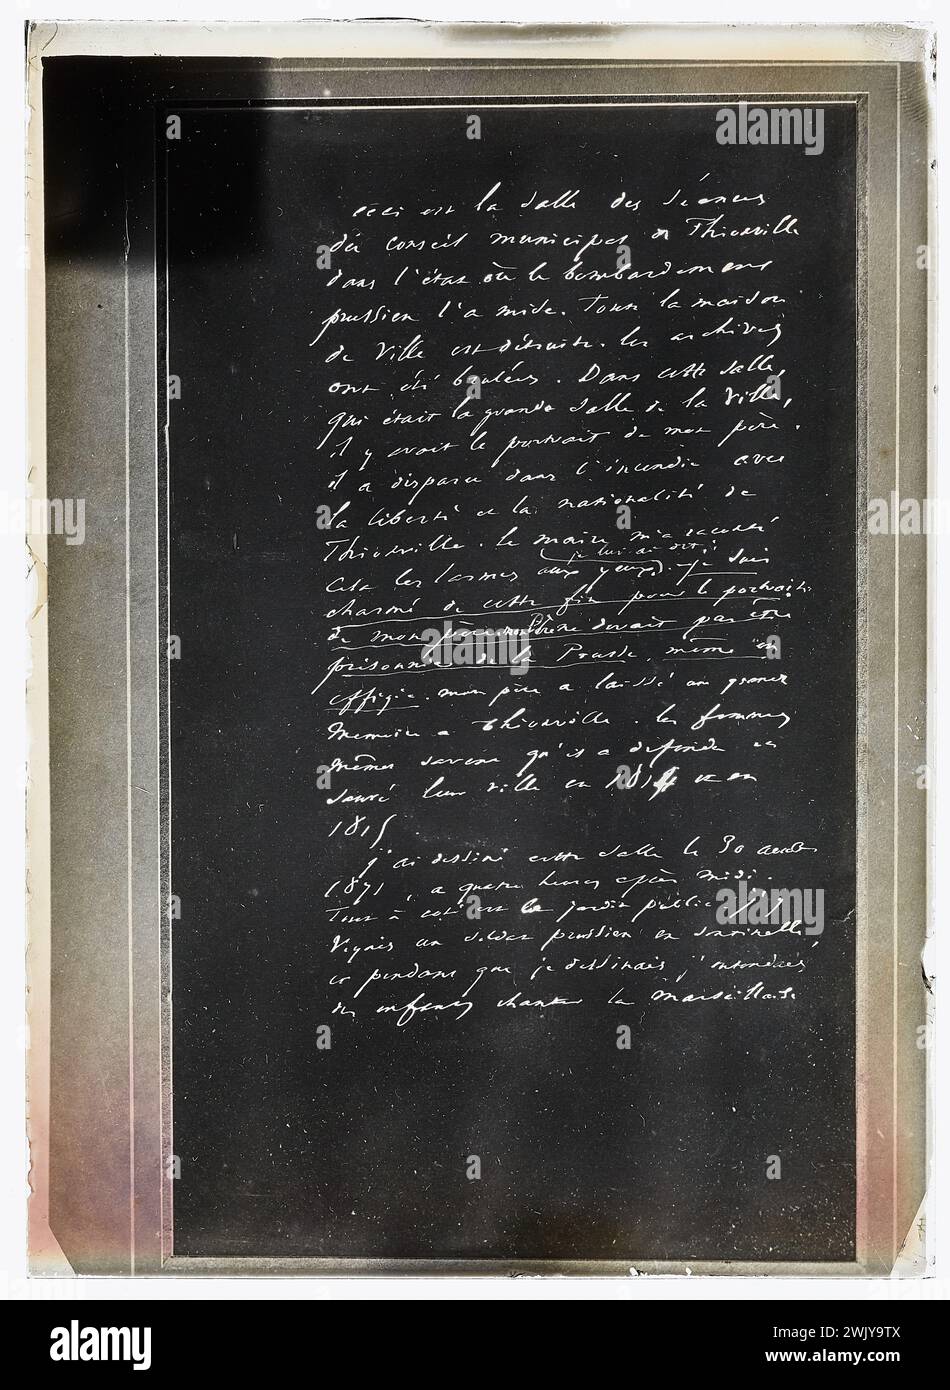 Anonyme, manuscrit accompagnant un dessin de Victor Hugo : salle des sessions du conseil de Thionville, après l'entrée des Prussiens en 1871 (titre factice). Maisons de Victor Hugo Paris - Guernesey. Banque D'Images